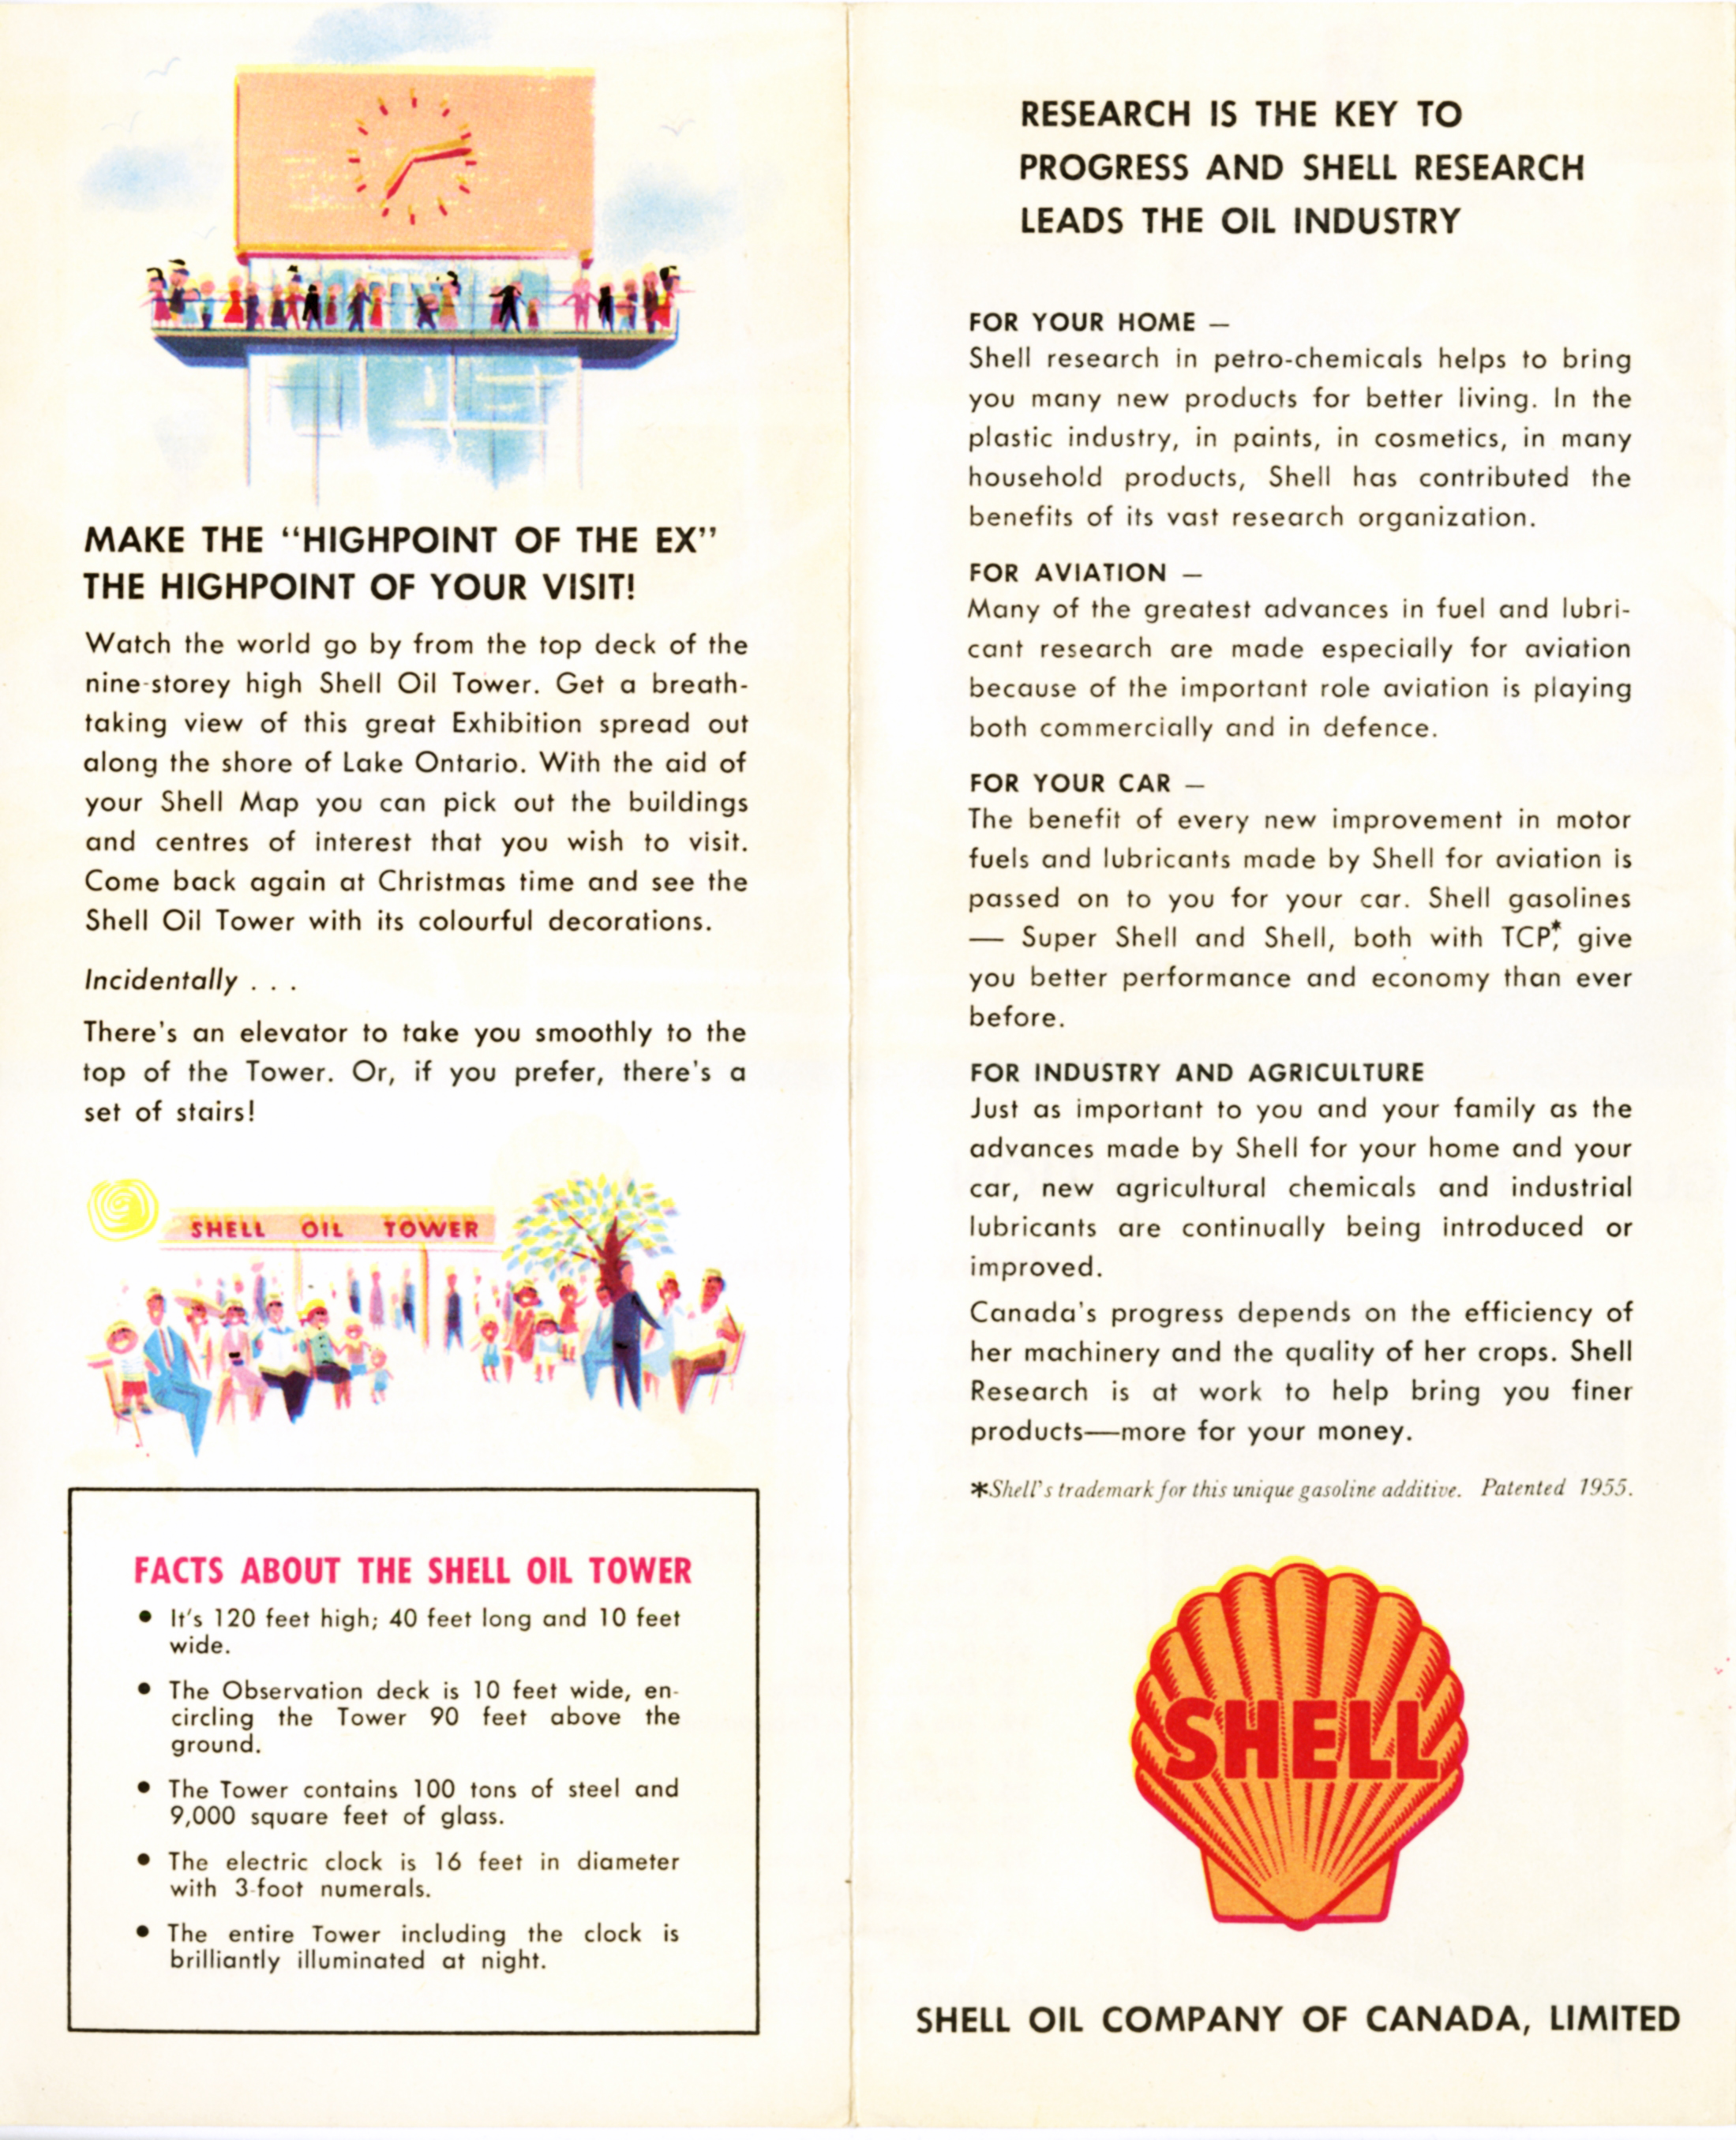 shell-oil-tower-brochure-3.jpg